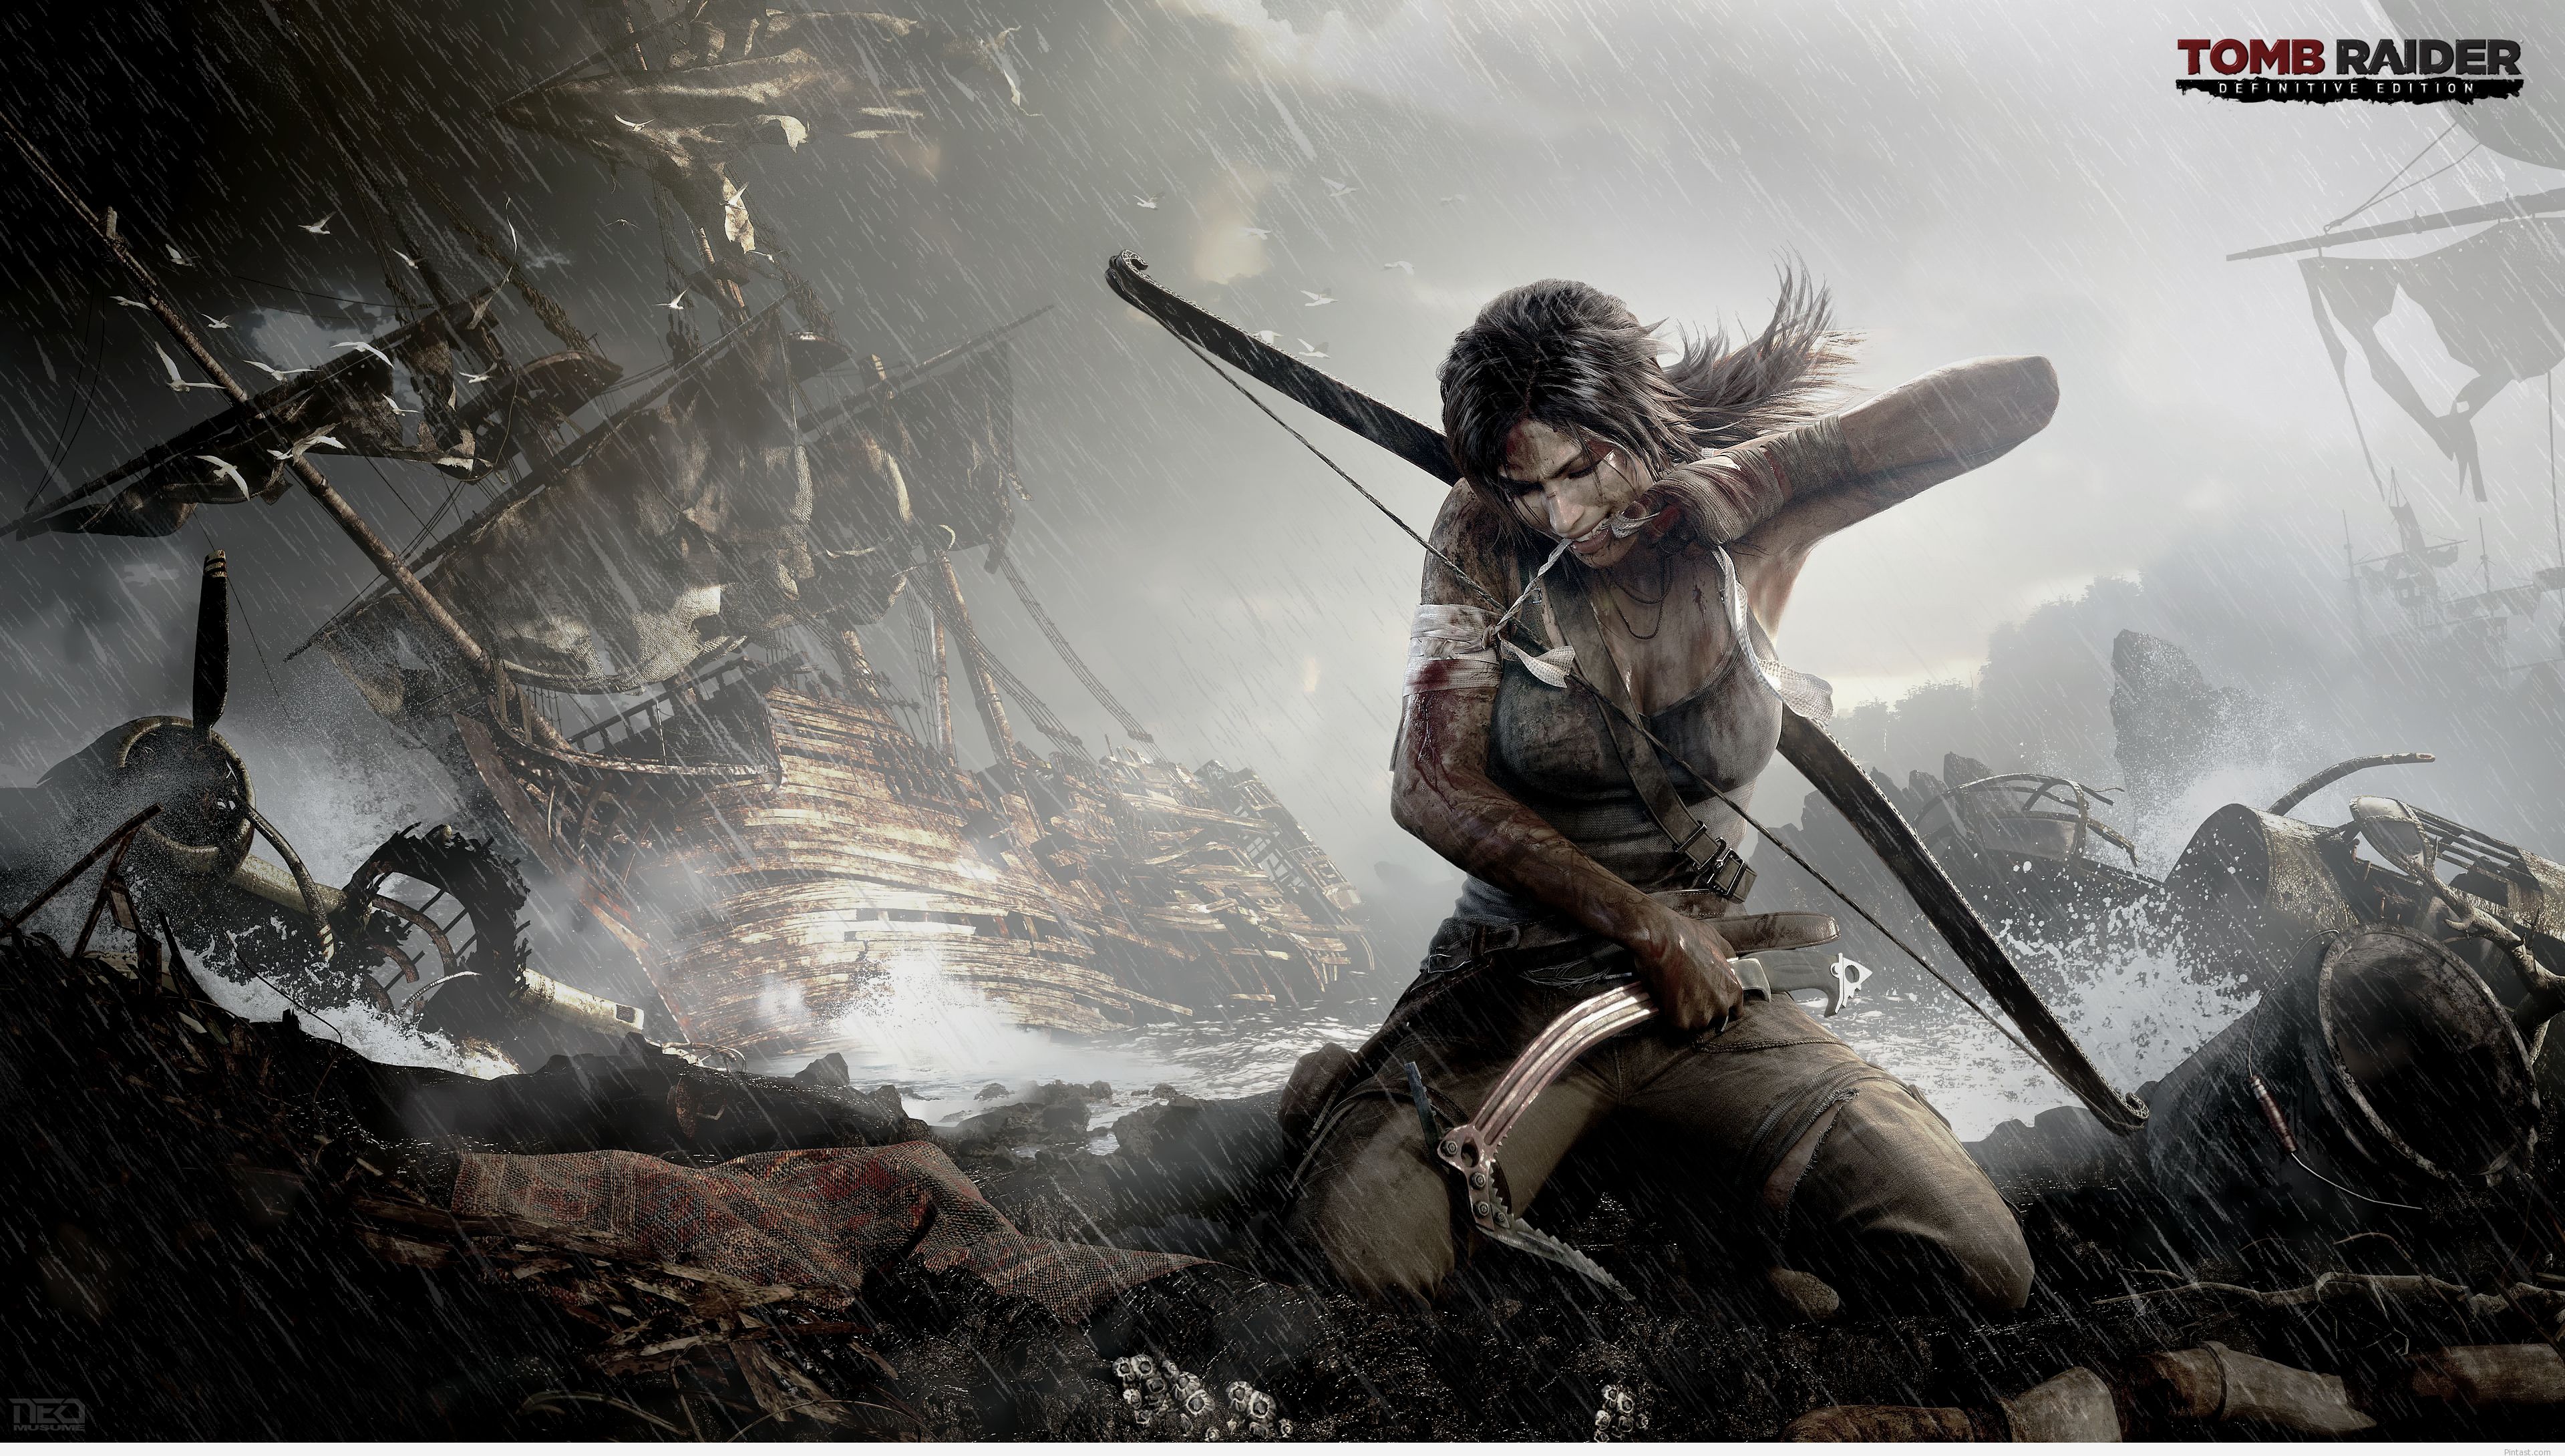 46+] Tomb Raider 4K Wallpaper - WallpaperSafari